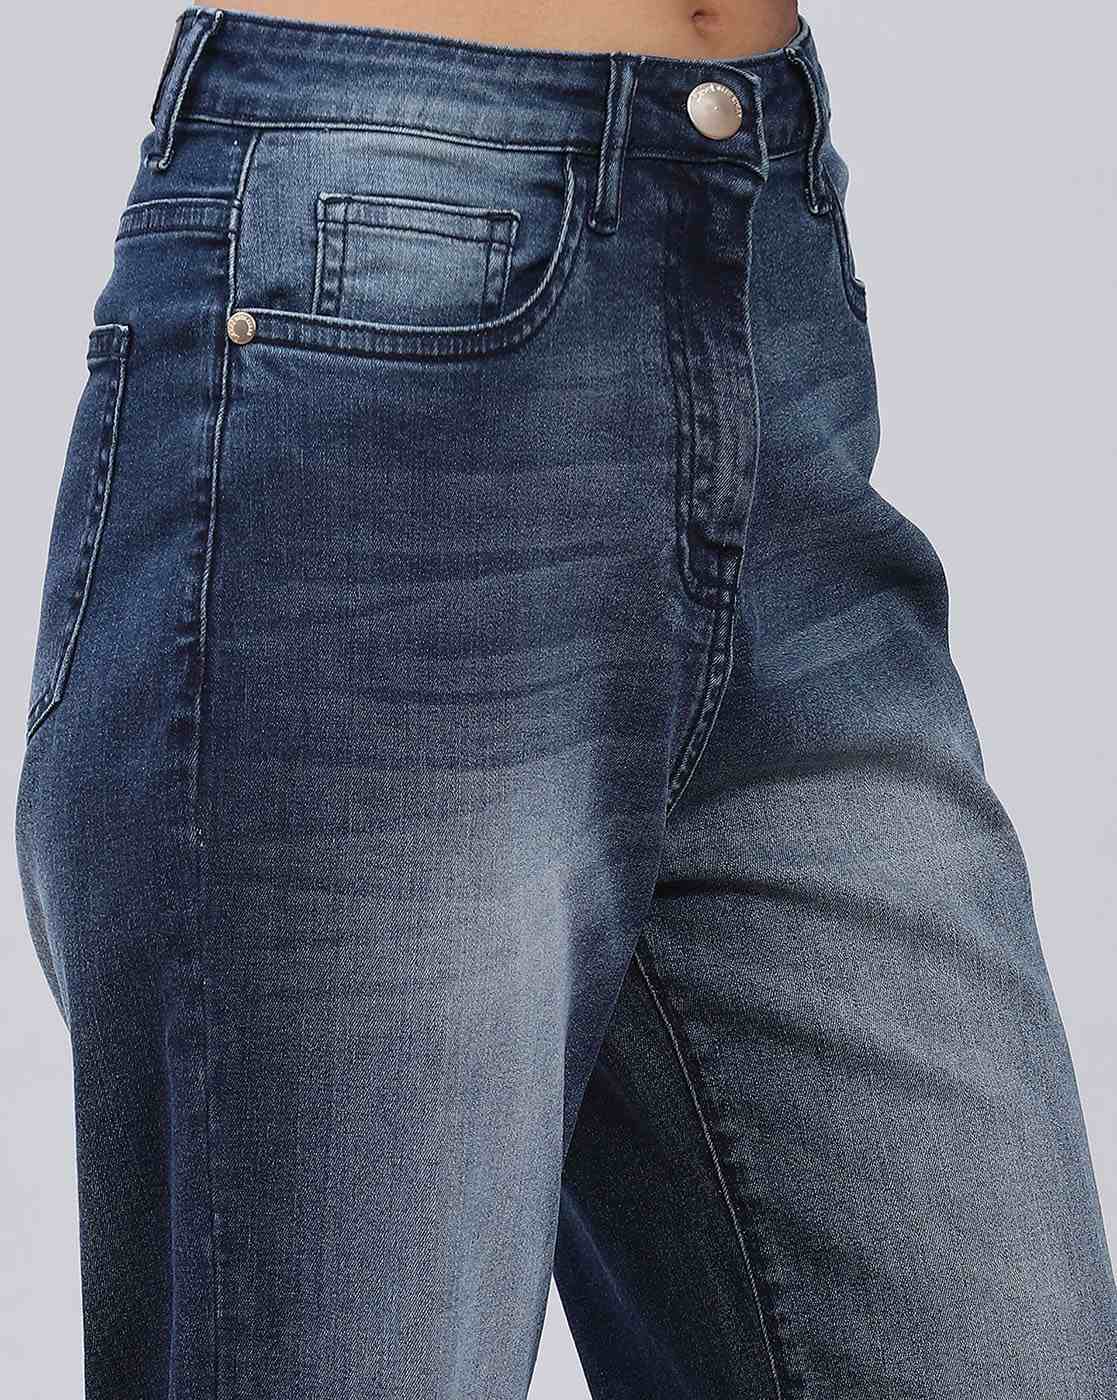 Buy Blue Jeans & Jeggings for Women by LABEL RITU KUMAR Online